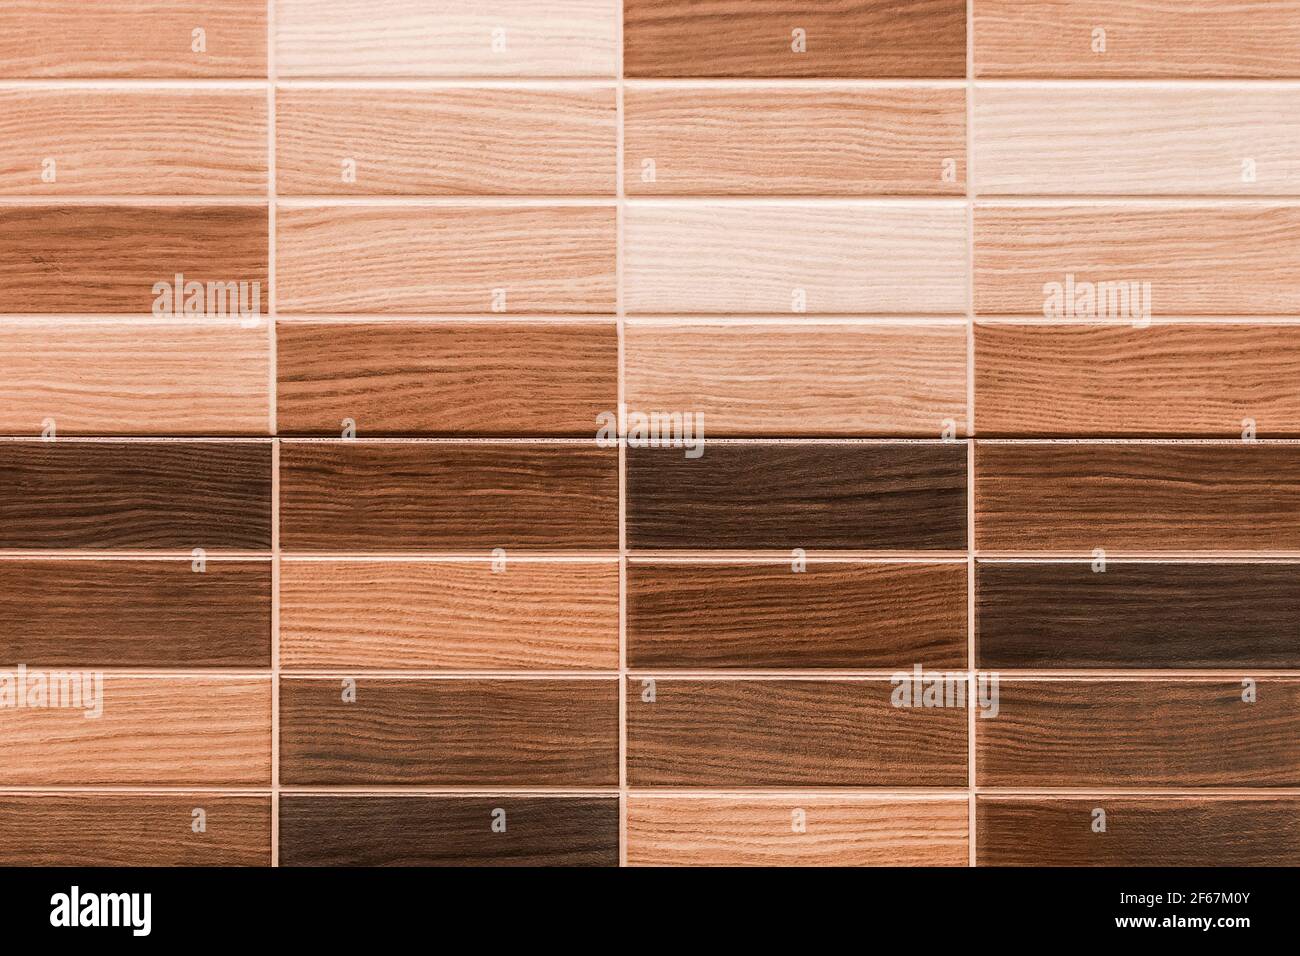 Échantillons de texture en bois pour le design intérieur, fond en mosaïque. Banque D'Images